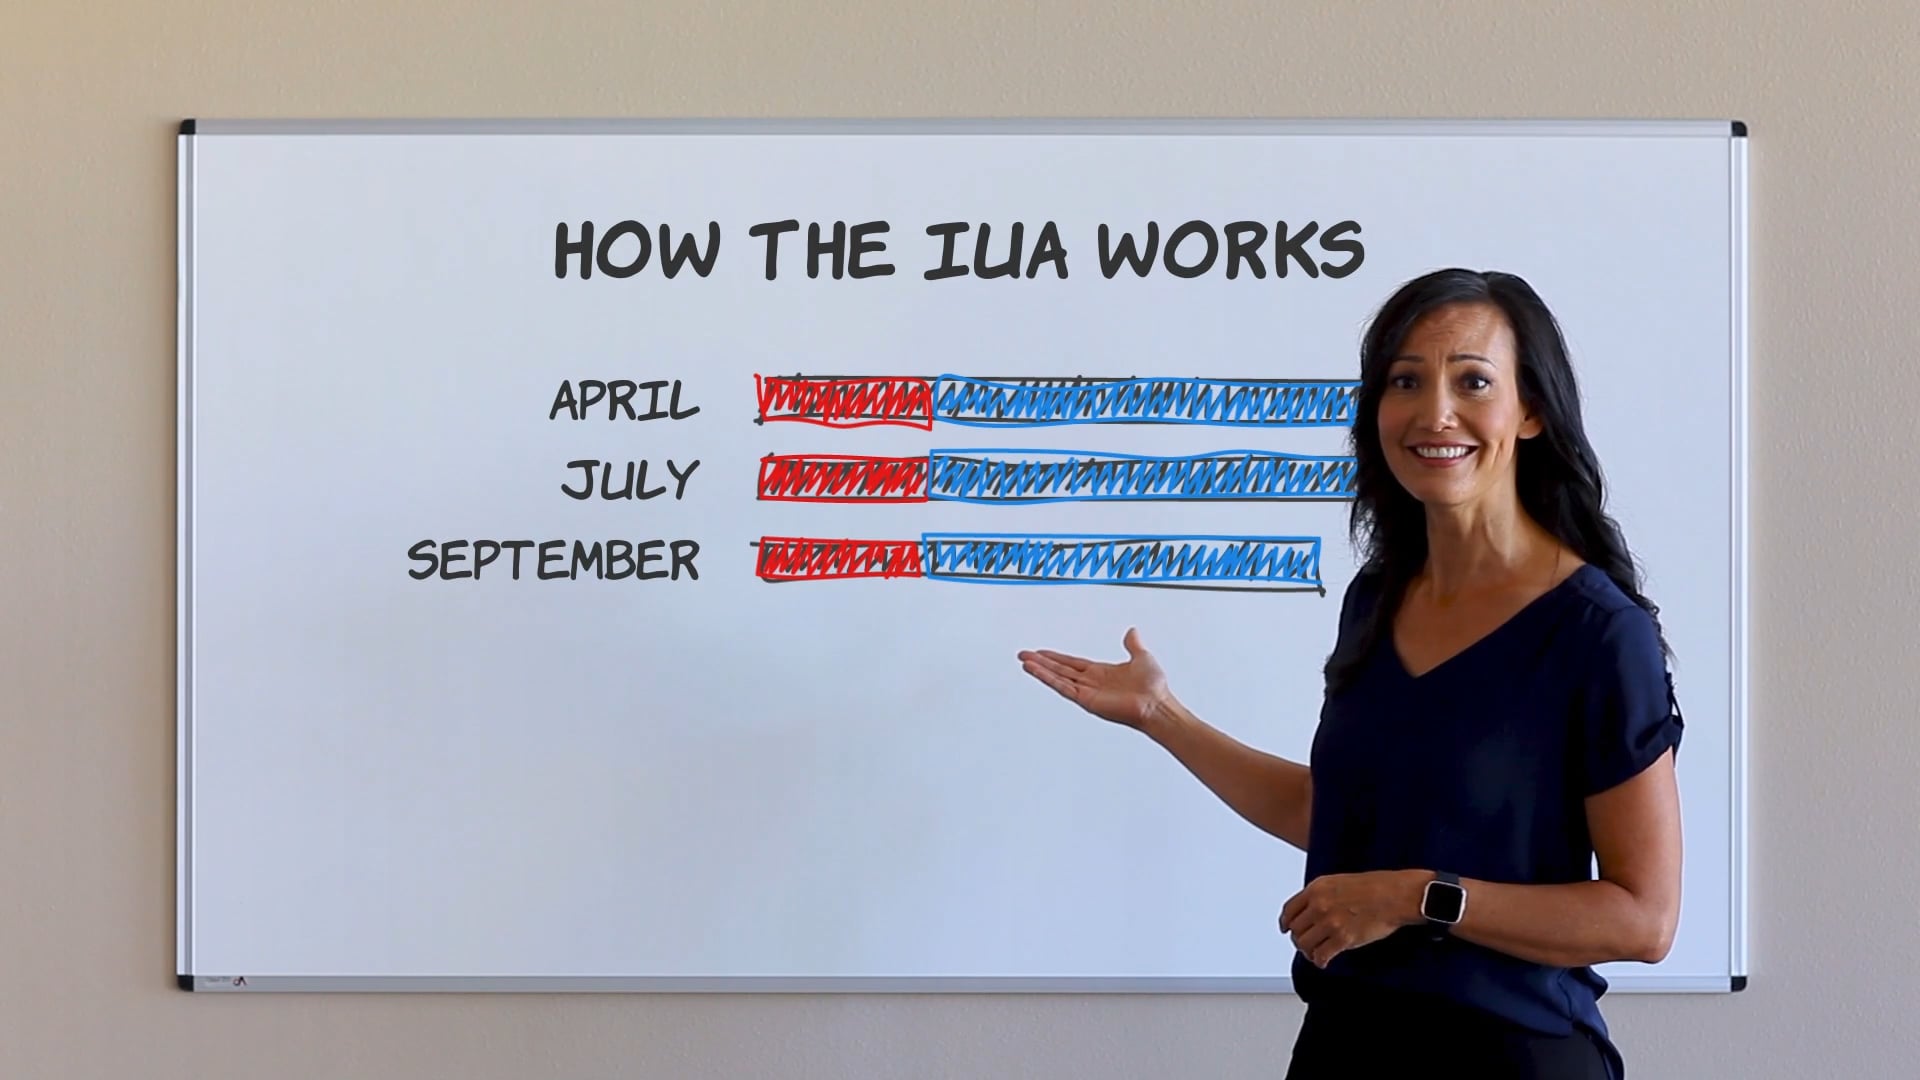 IUA 01 - How the IUA Works